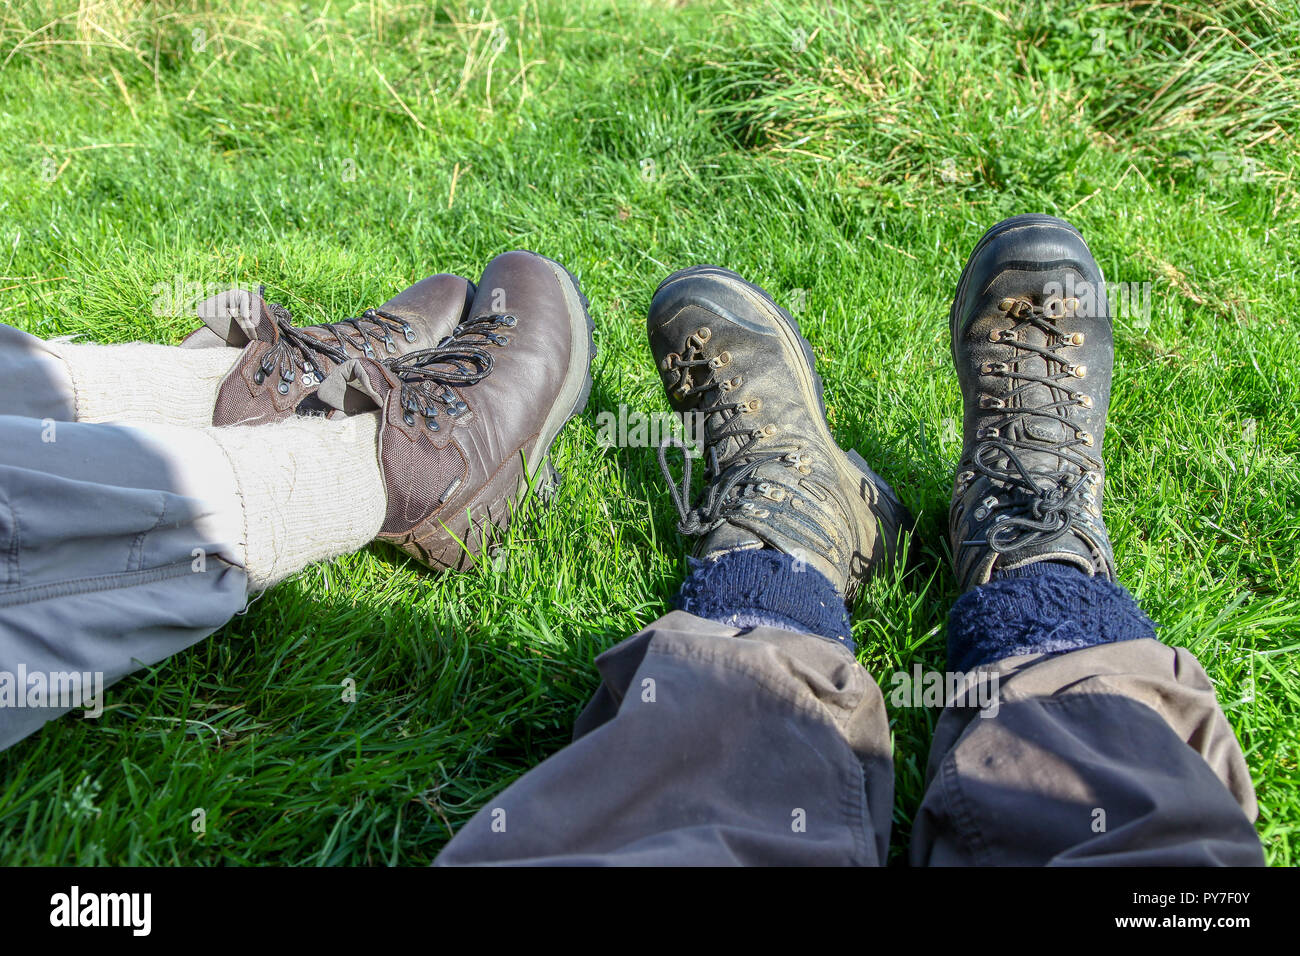 Ein Mann und eine Frau tragen Wanderschuhe liegend im Gras Stockfotografie  - Alamy